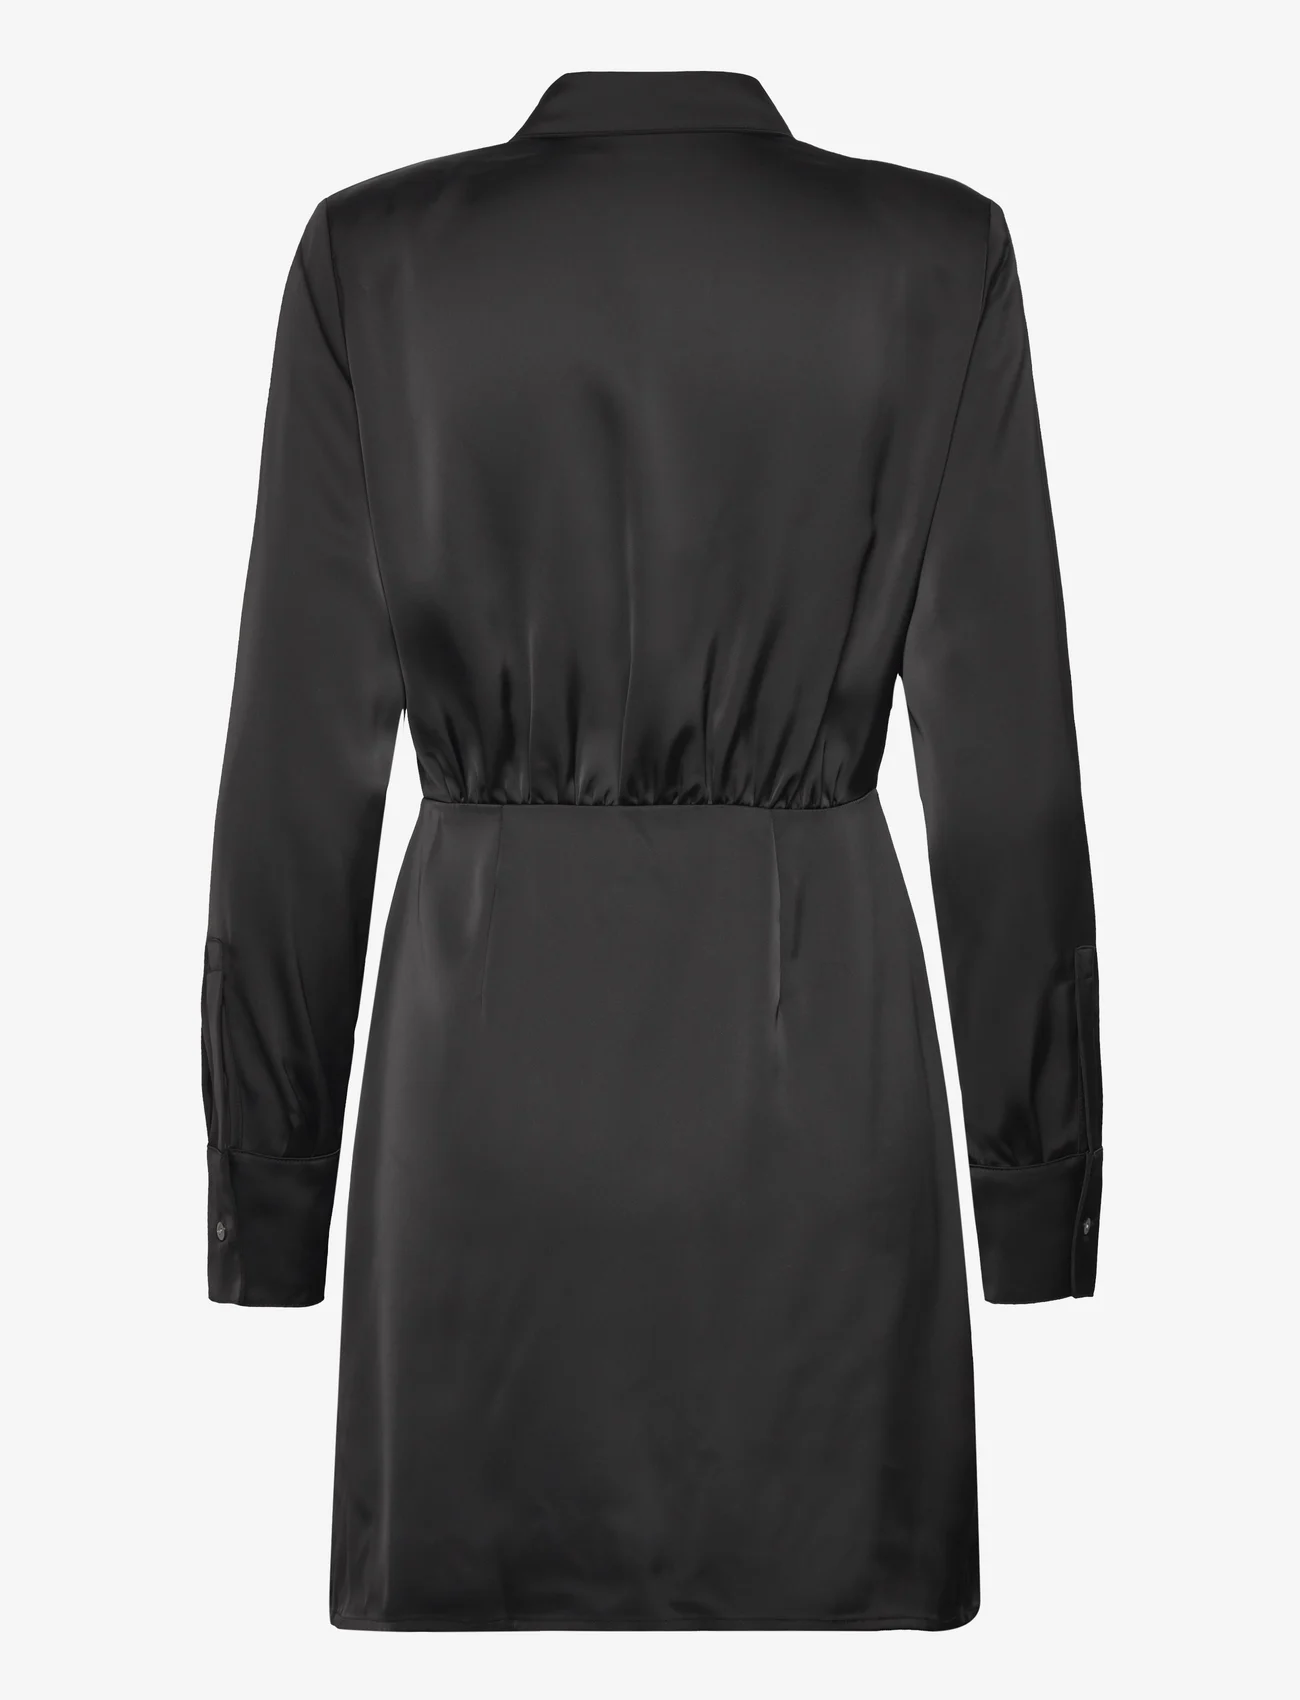 Karl Lagerfeld - karl charm satin shirt dress - skjortekjoler - black - 1